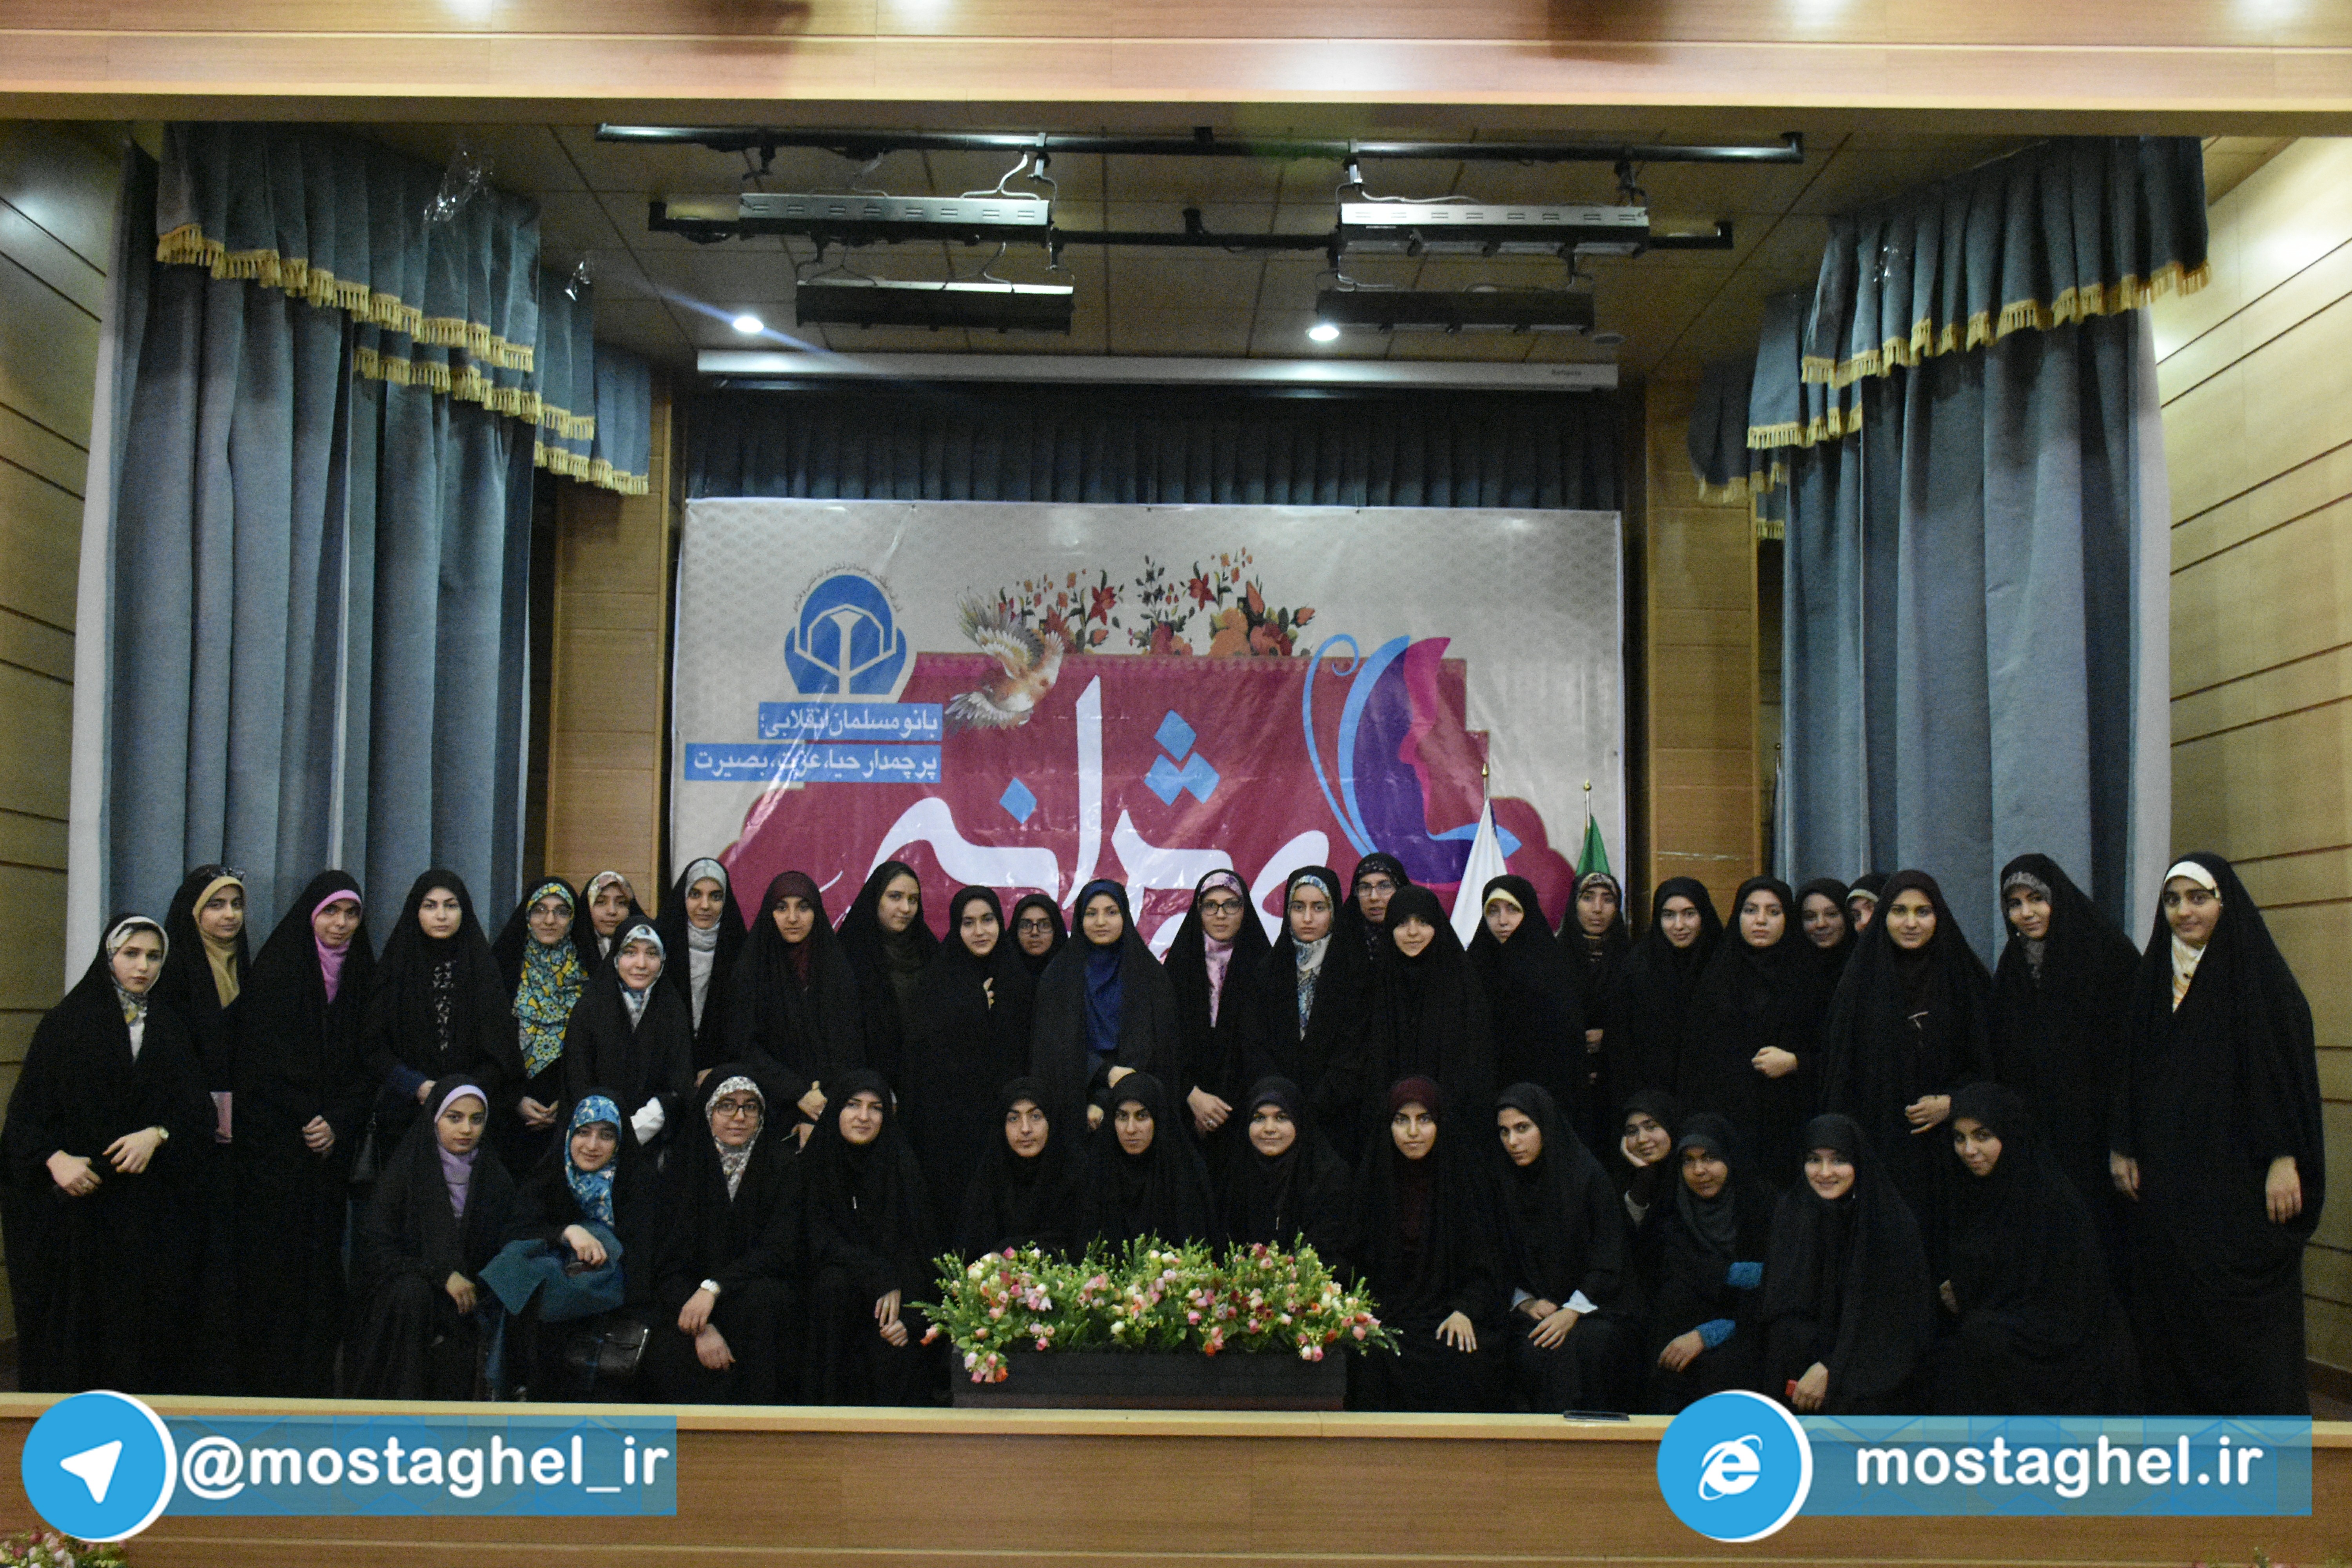 اولین گردهمایی واحد خواهران اتحادیه انجمن های اسلامی دانشجویان مستقل دانشگاه های سراسر کشور